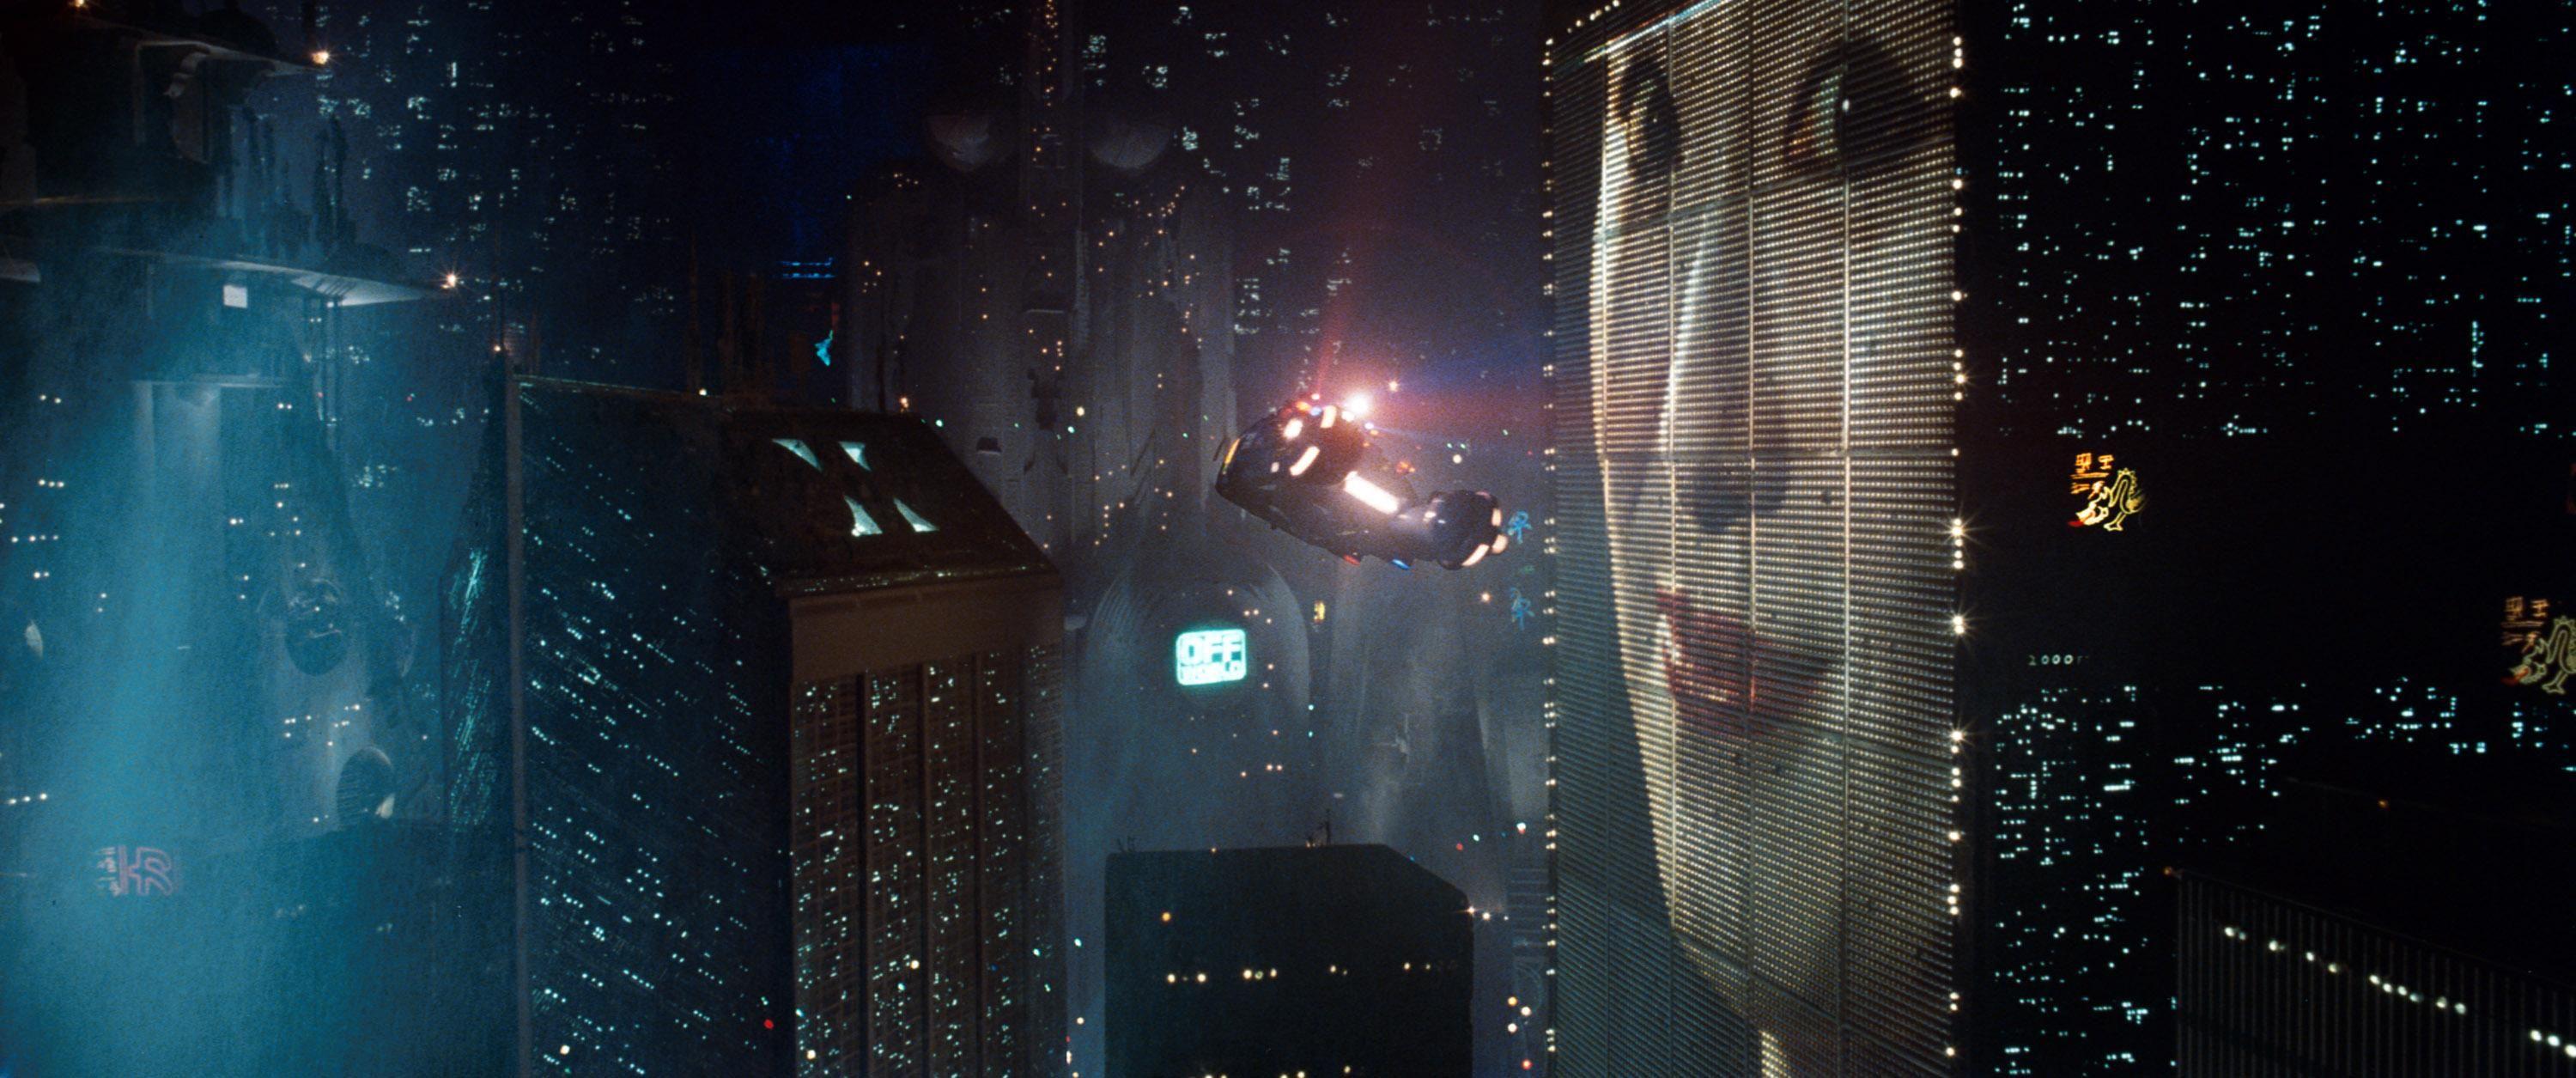 Blade Runner HD Wallpaper